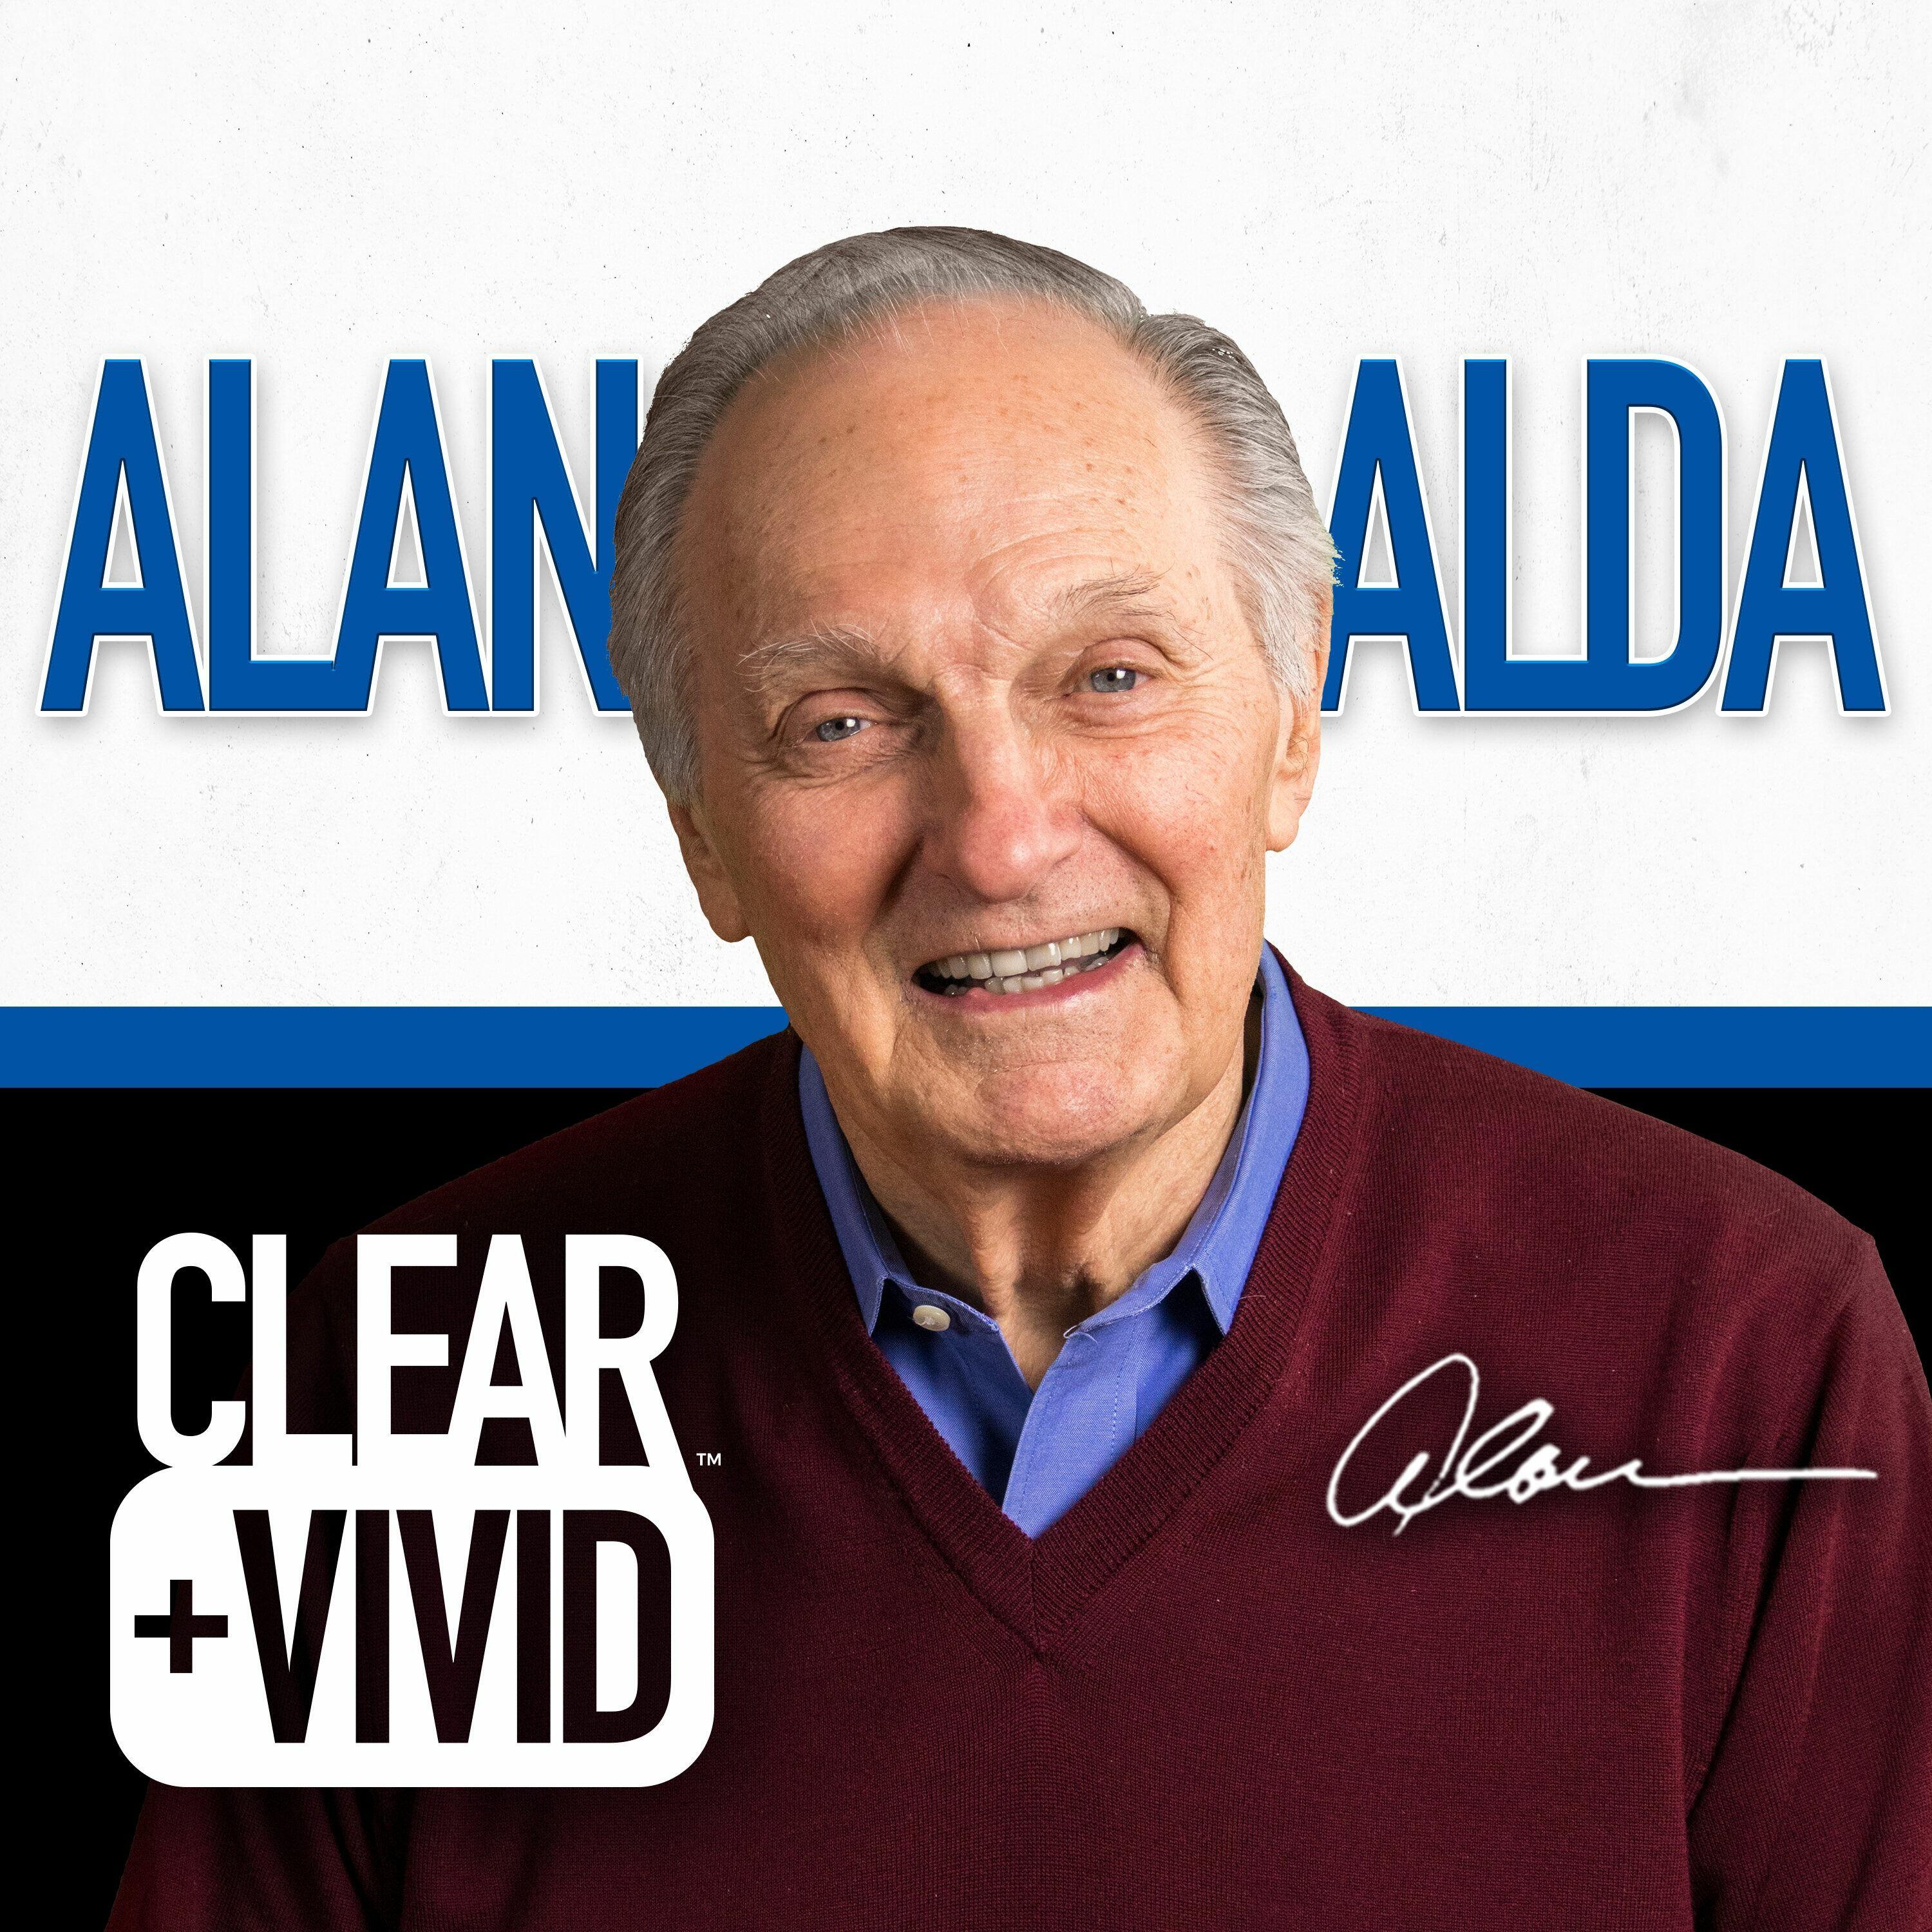 Clear+Vivid with Alan Alda, alan alda 